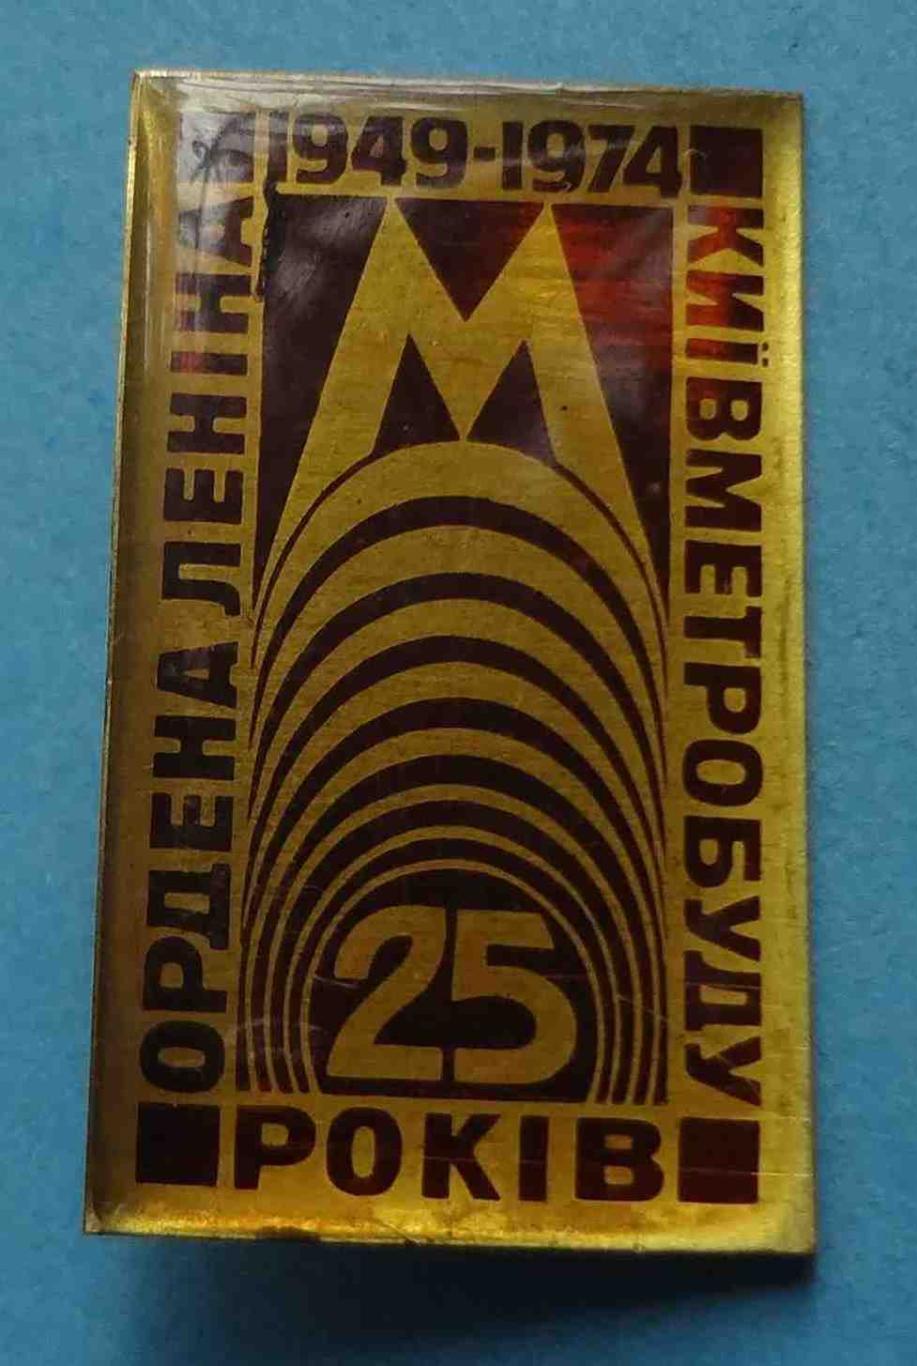 25 лет Ордена Ленина Киевметростроя 1949-1974 метро (39)